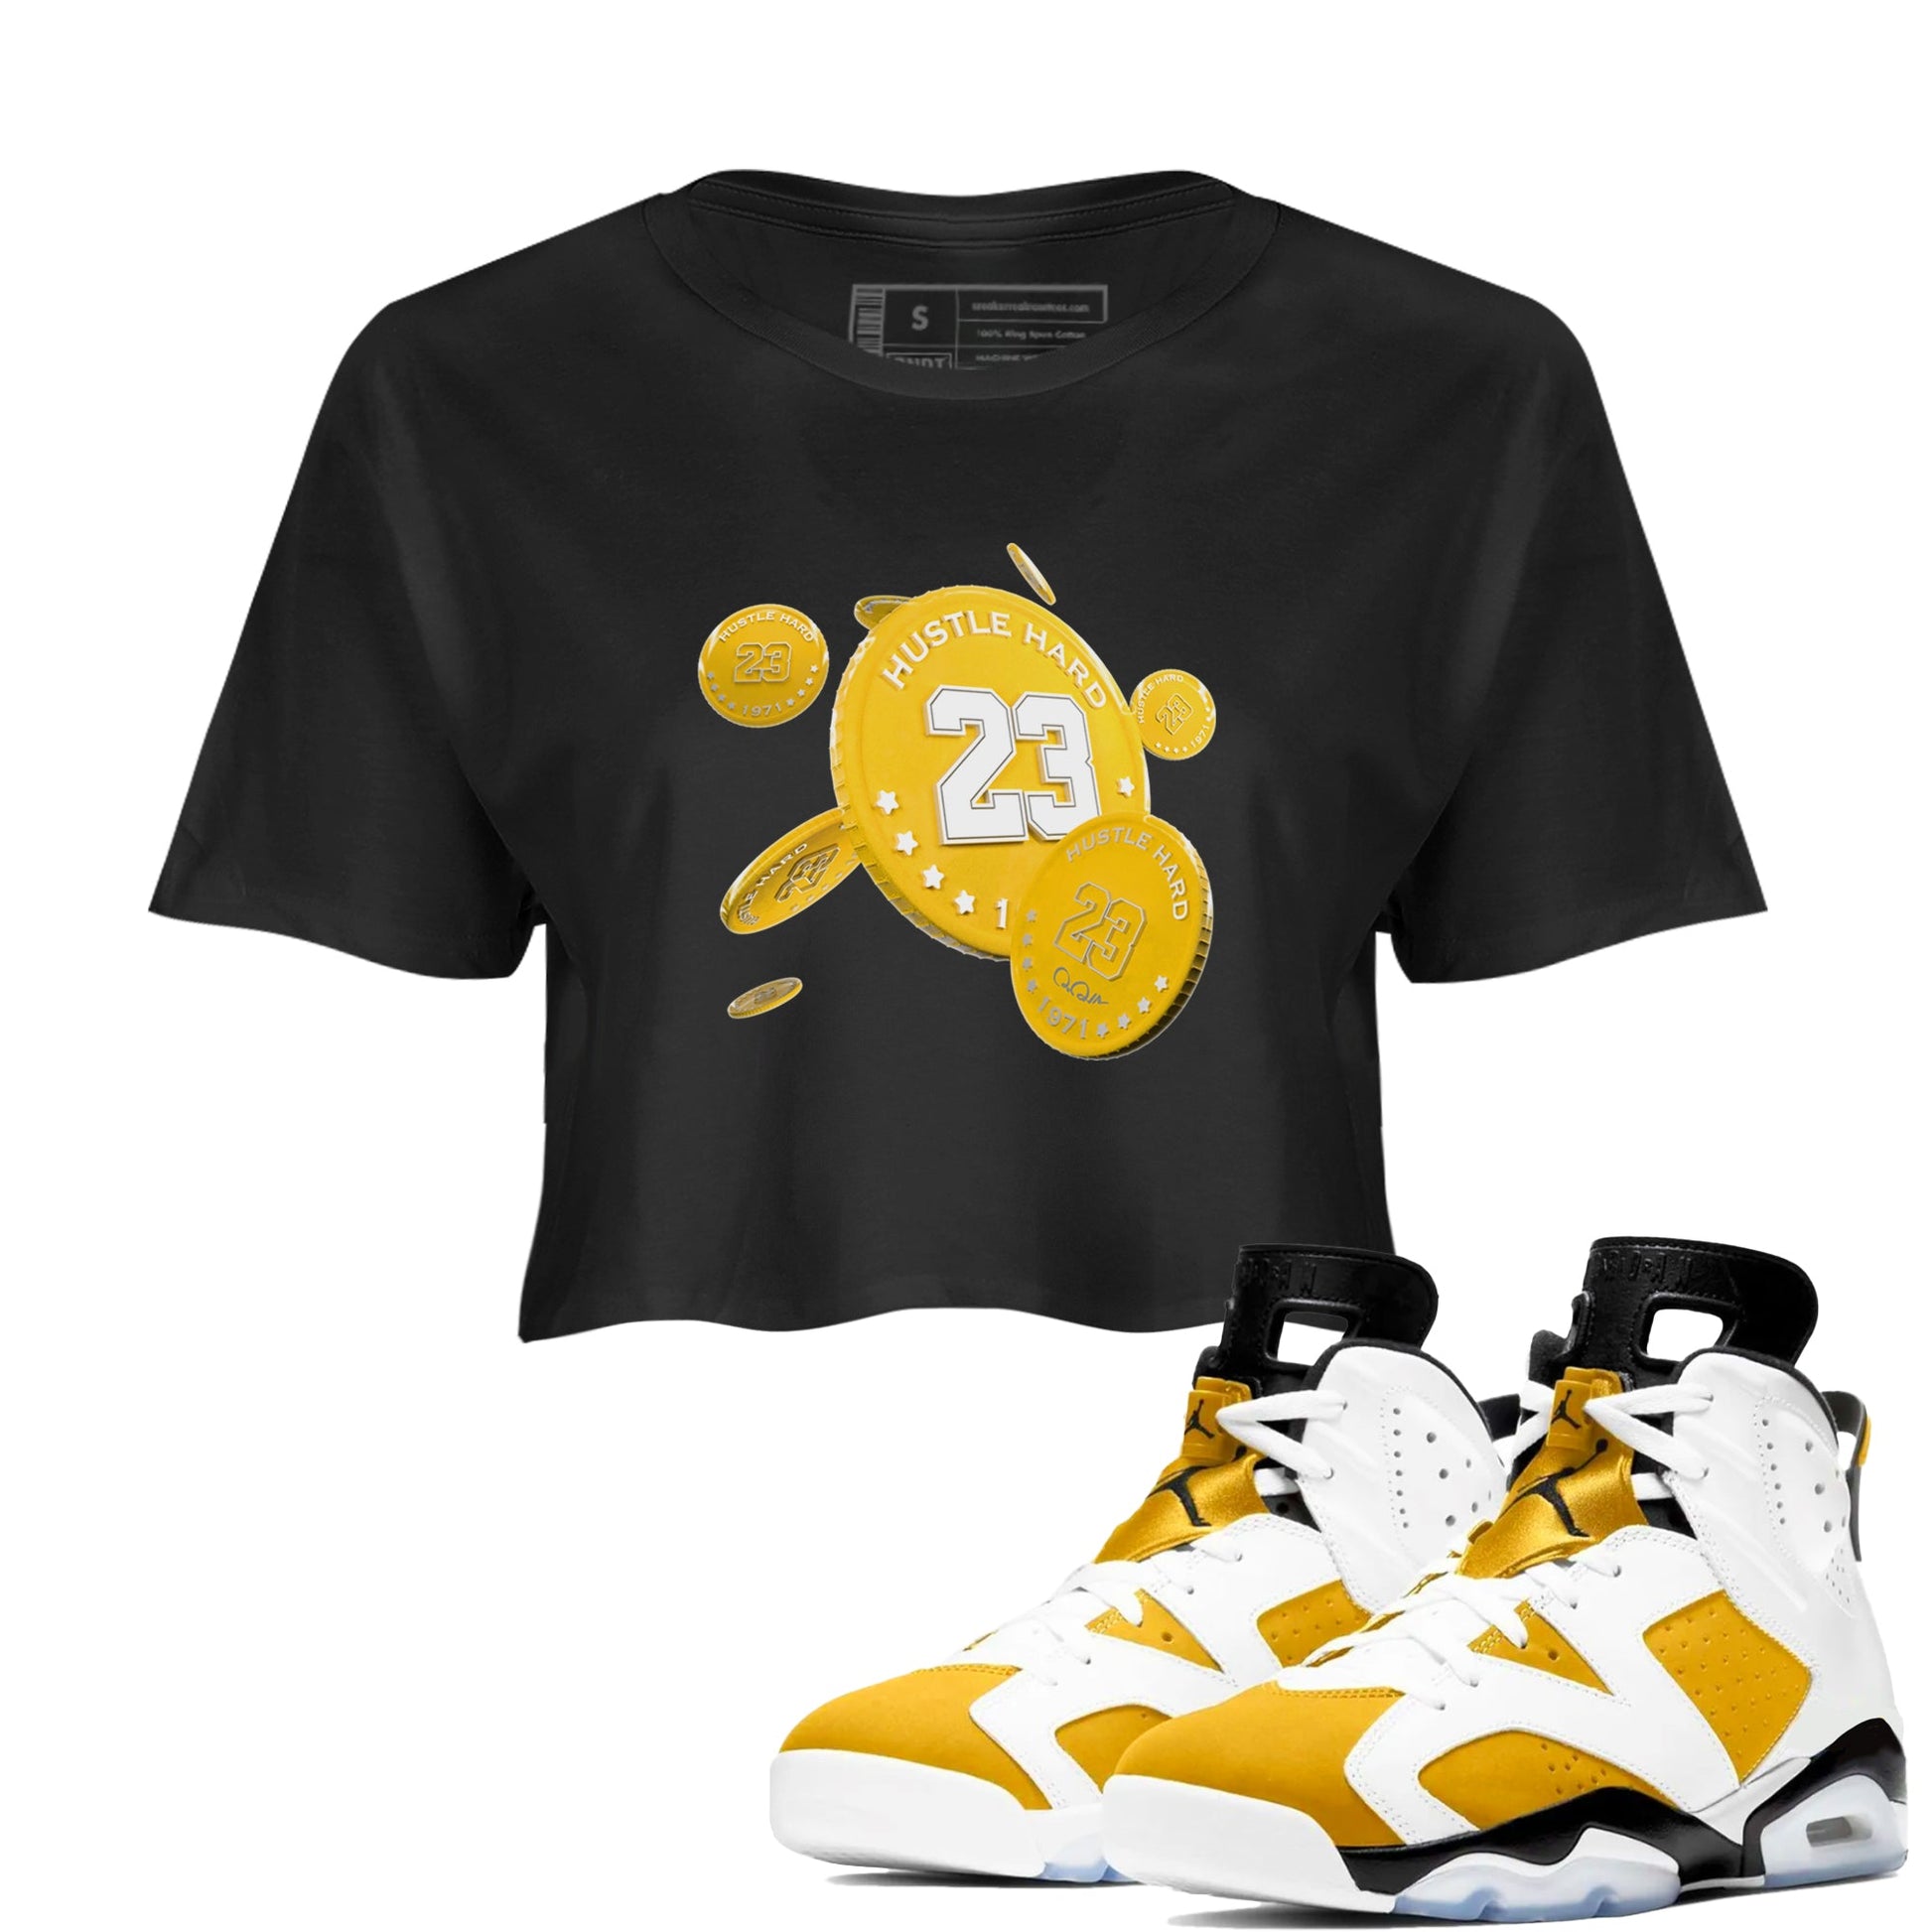 6s Yellow Ochre shirt to match jordans Coin Drop sneaker tees Air Jordan 6 Yellow Ochre SNRT Sneaker Release Tees Black 1 Crop T-Shirt